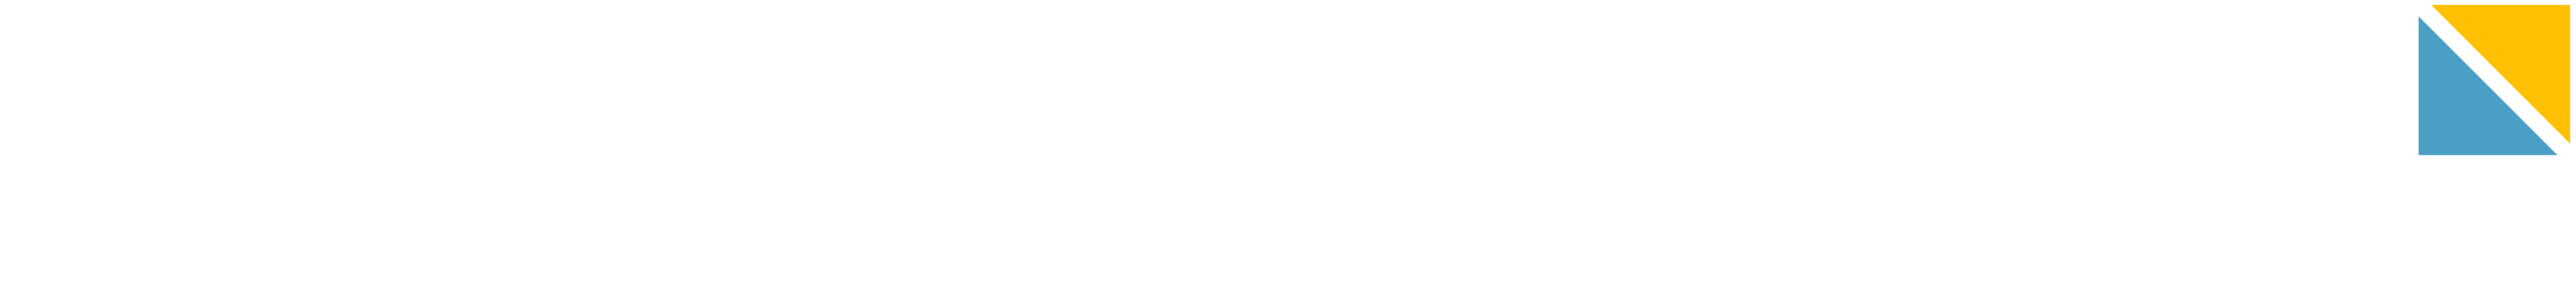 SCHROEDER PROACTIVE - The Public Perception Specialists - Die Full Service Werbeagentur